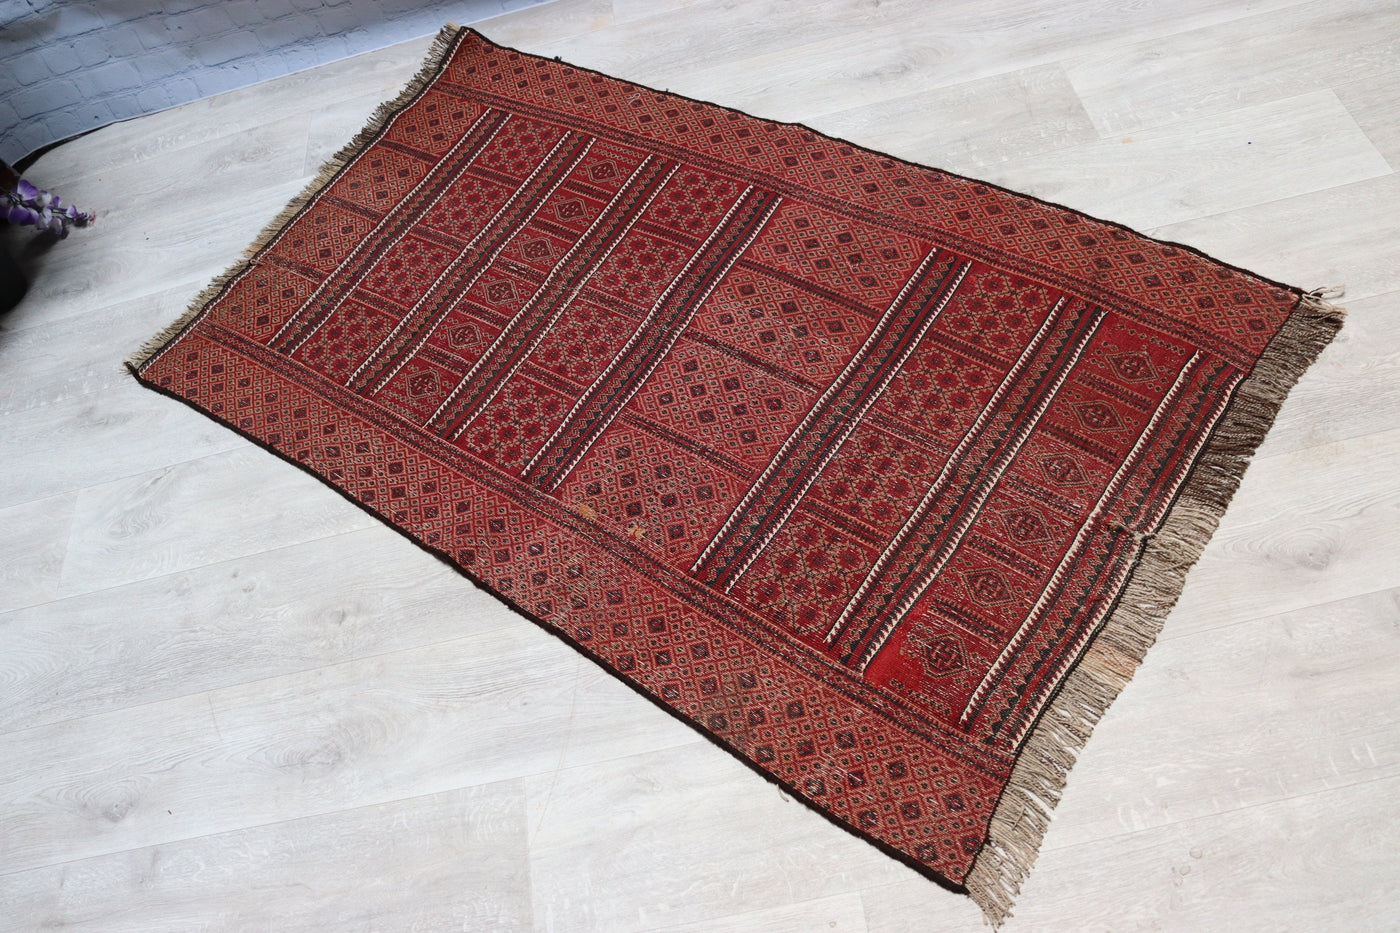 150x90 cm Antik orient handgewebte Teppich Nomaden Balouch sumakh kelim afghan Beloch kilim Nr-22/PK-26 Teppiche Orientsbazar   